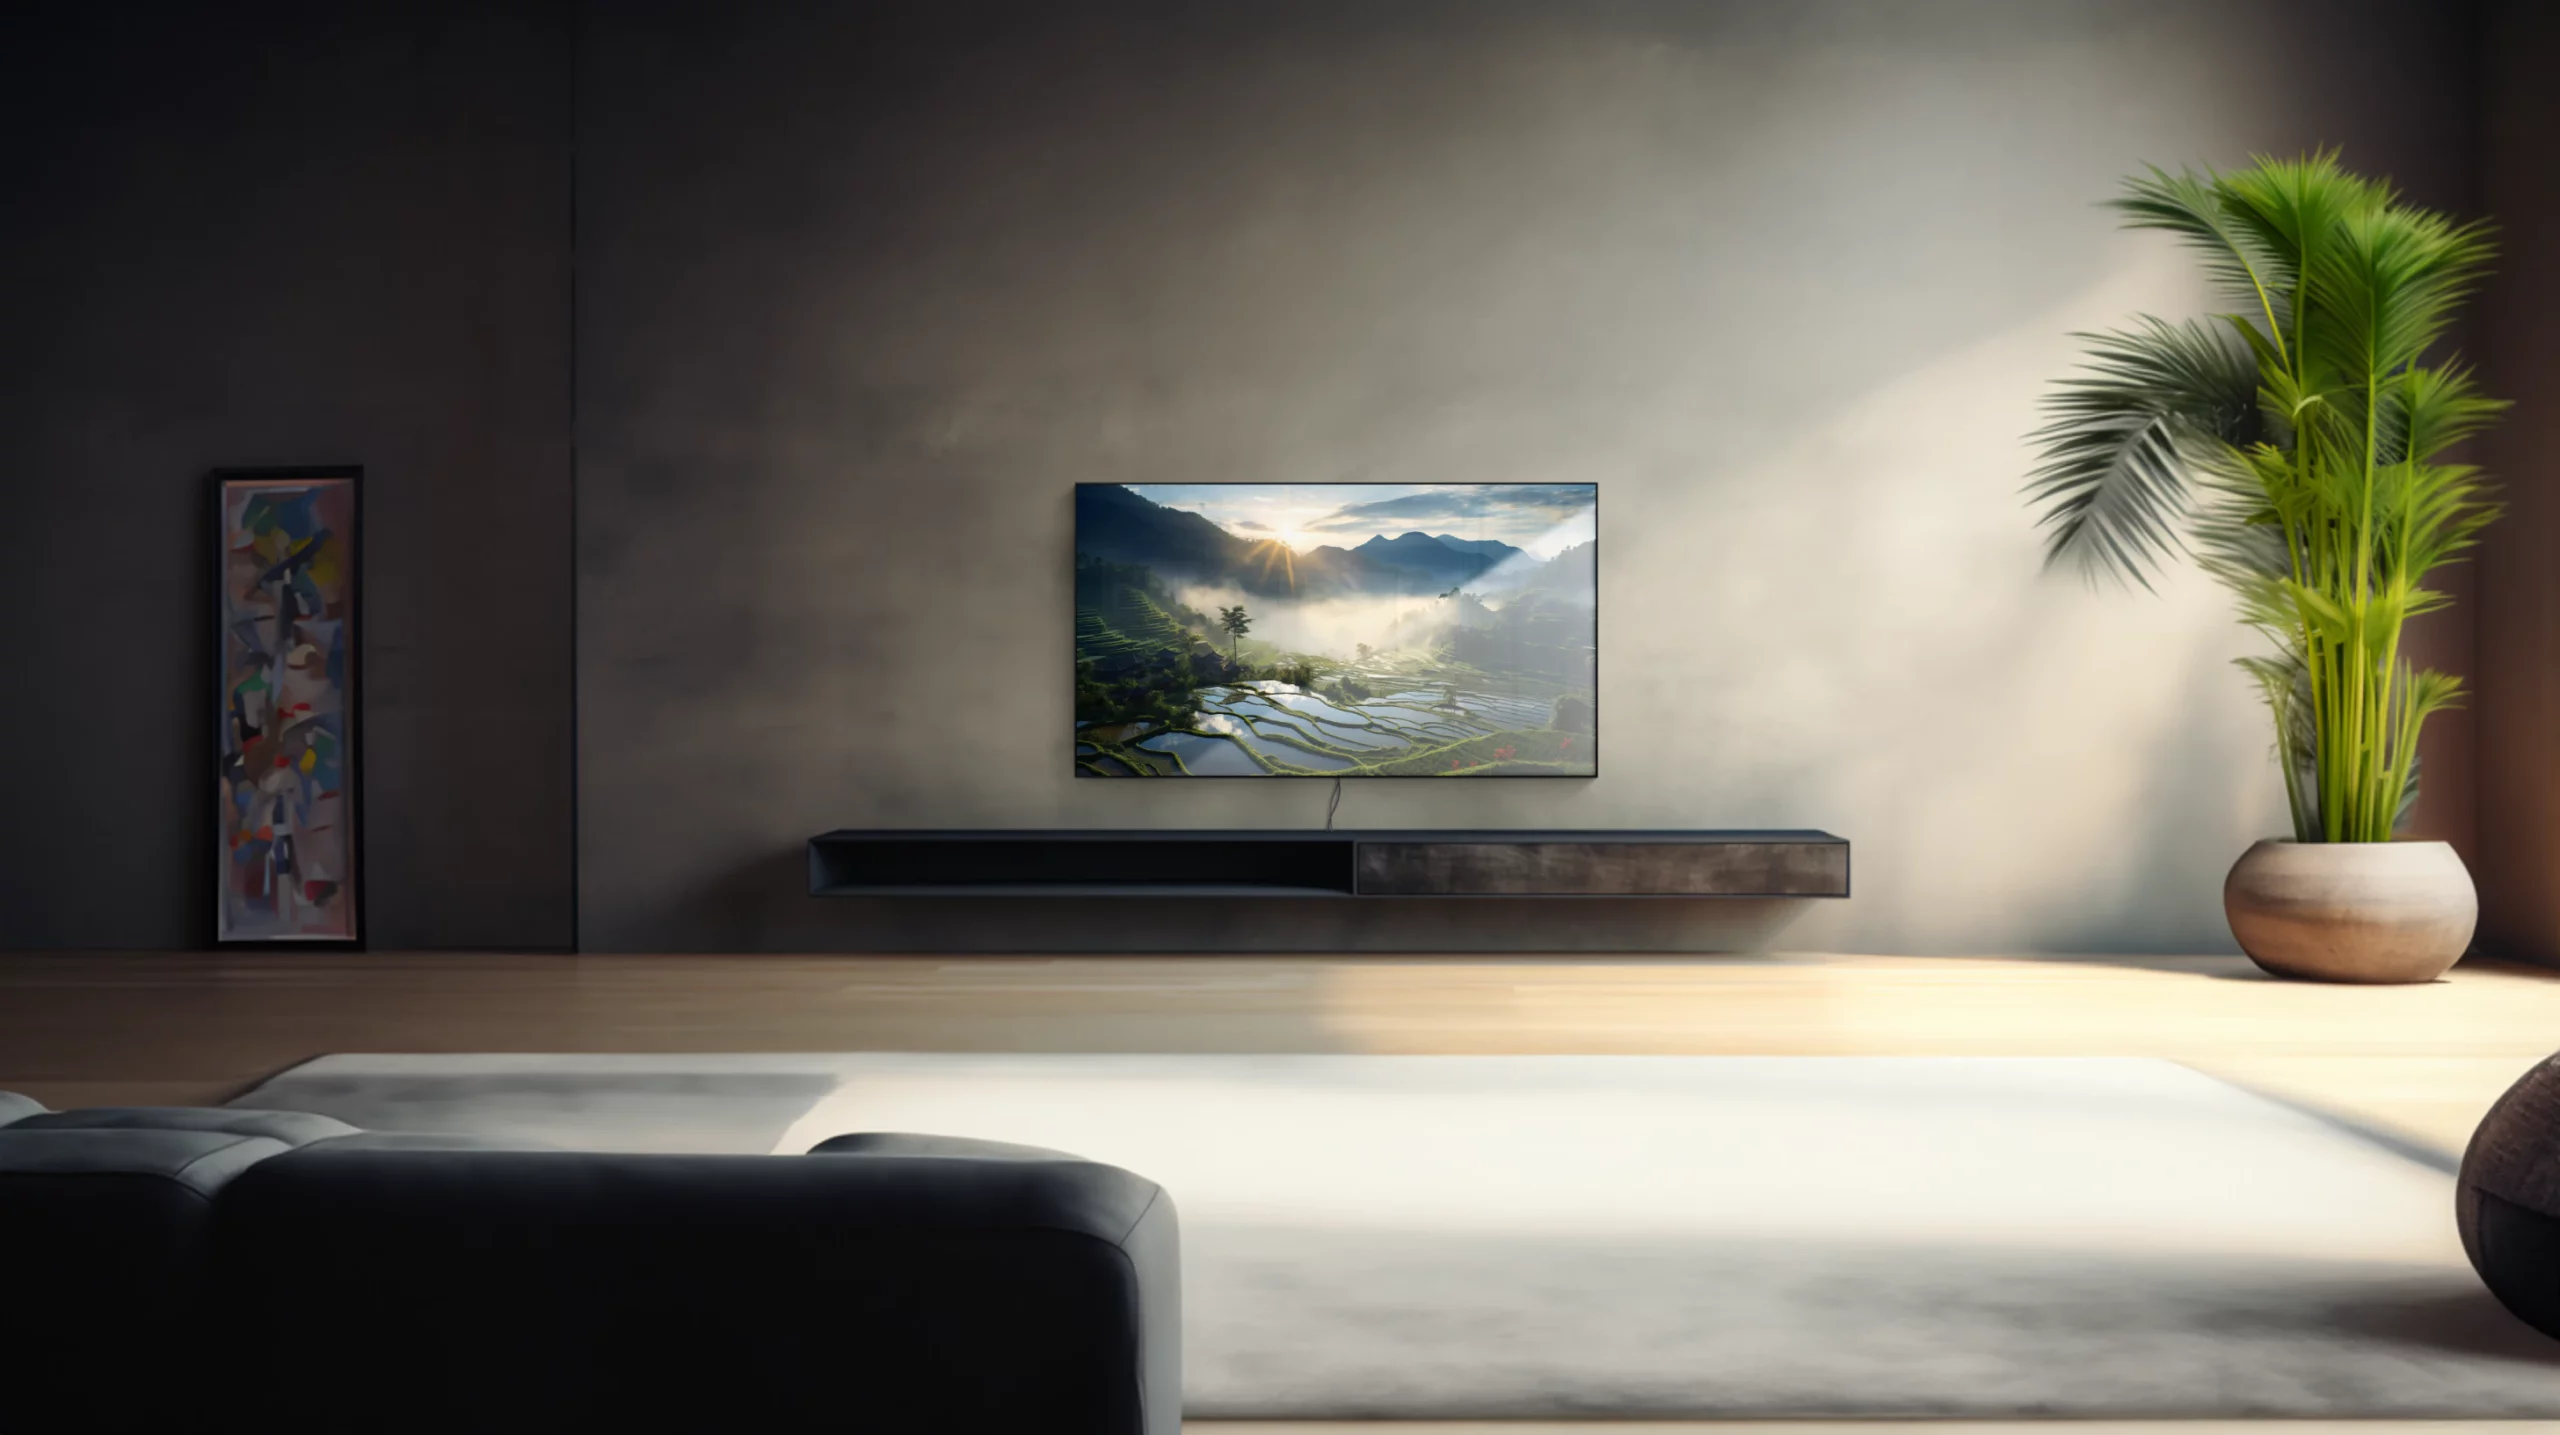 Ein 75 Zoll Fernseher in einem modernen Wohnzimmer. Auf dem Display ist zu erkennen, dass die Oberfläche vom Fernseher spiegelt. Der Fernseher ist an der Wand montiert und Kabel sind unterhalb des Gerätes zu sehen.